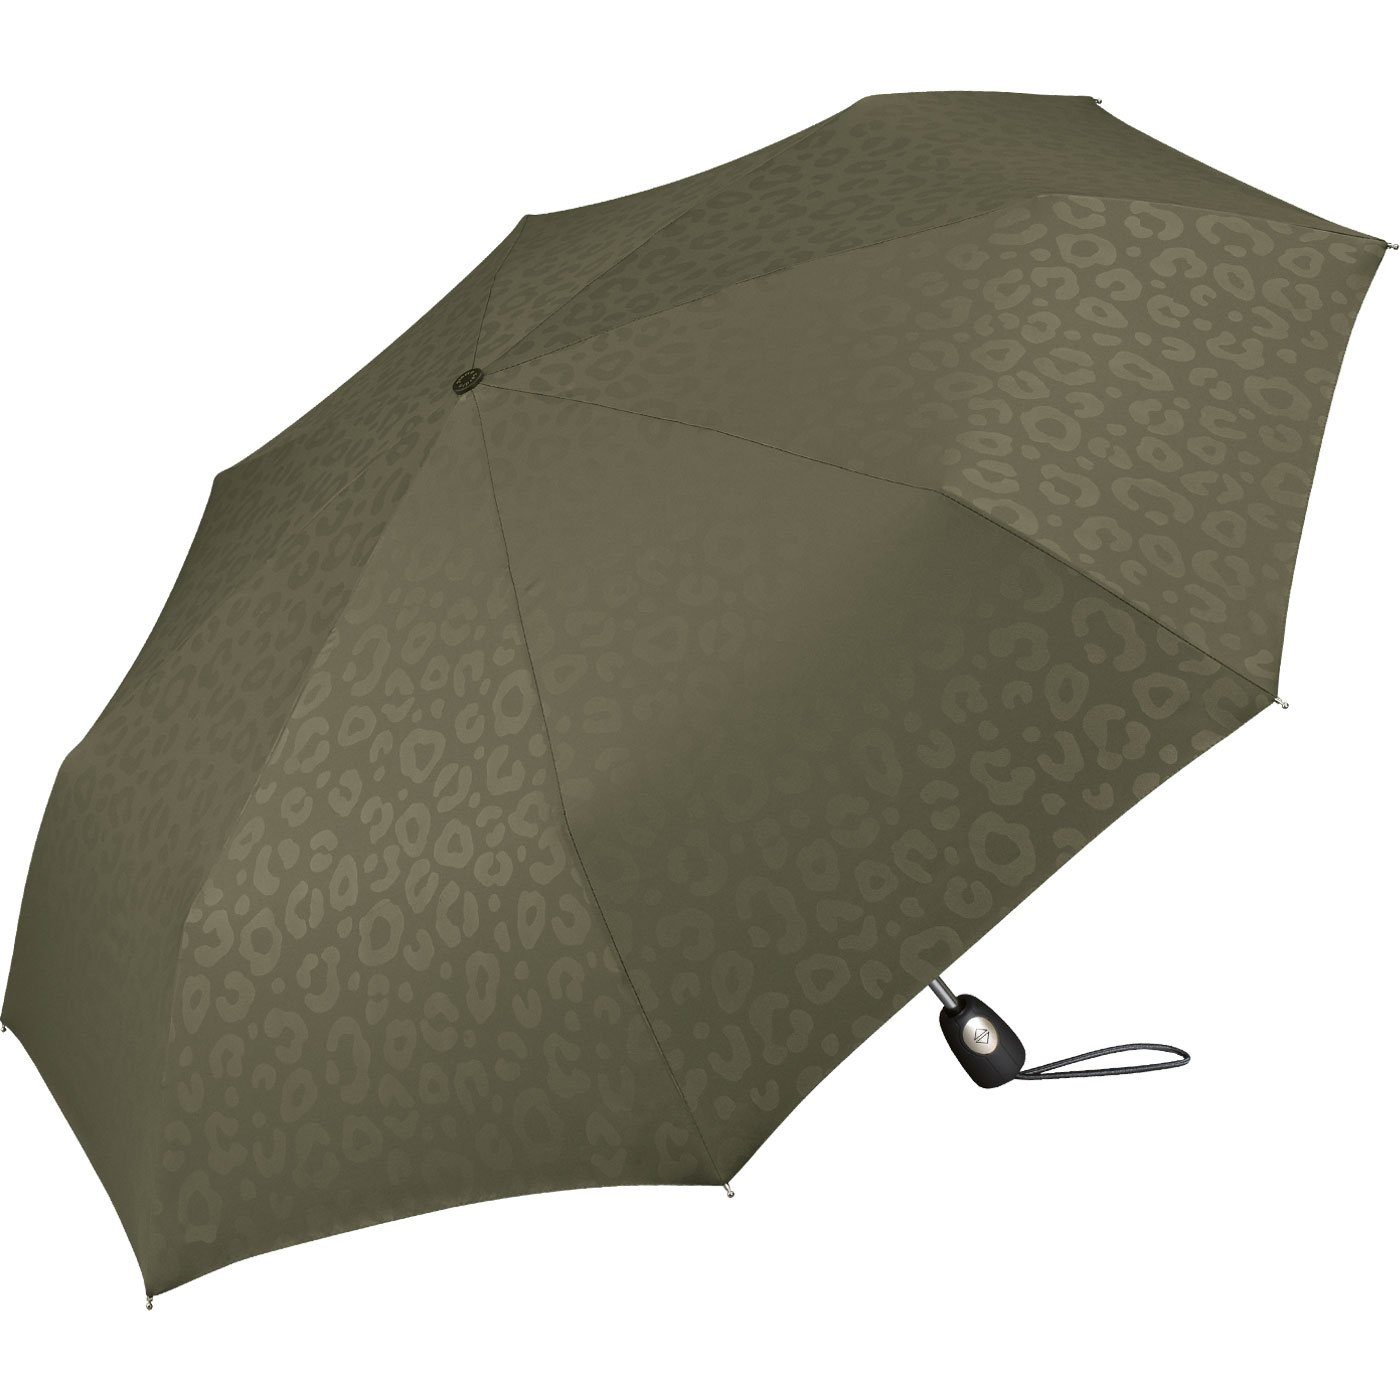 Cardin Taschenregenschirm Jaguarmuster, ein Pierre das Auf-Zu-Automatik, bezaubert Damen-Regenschirm mit olive schöner